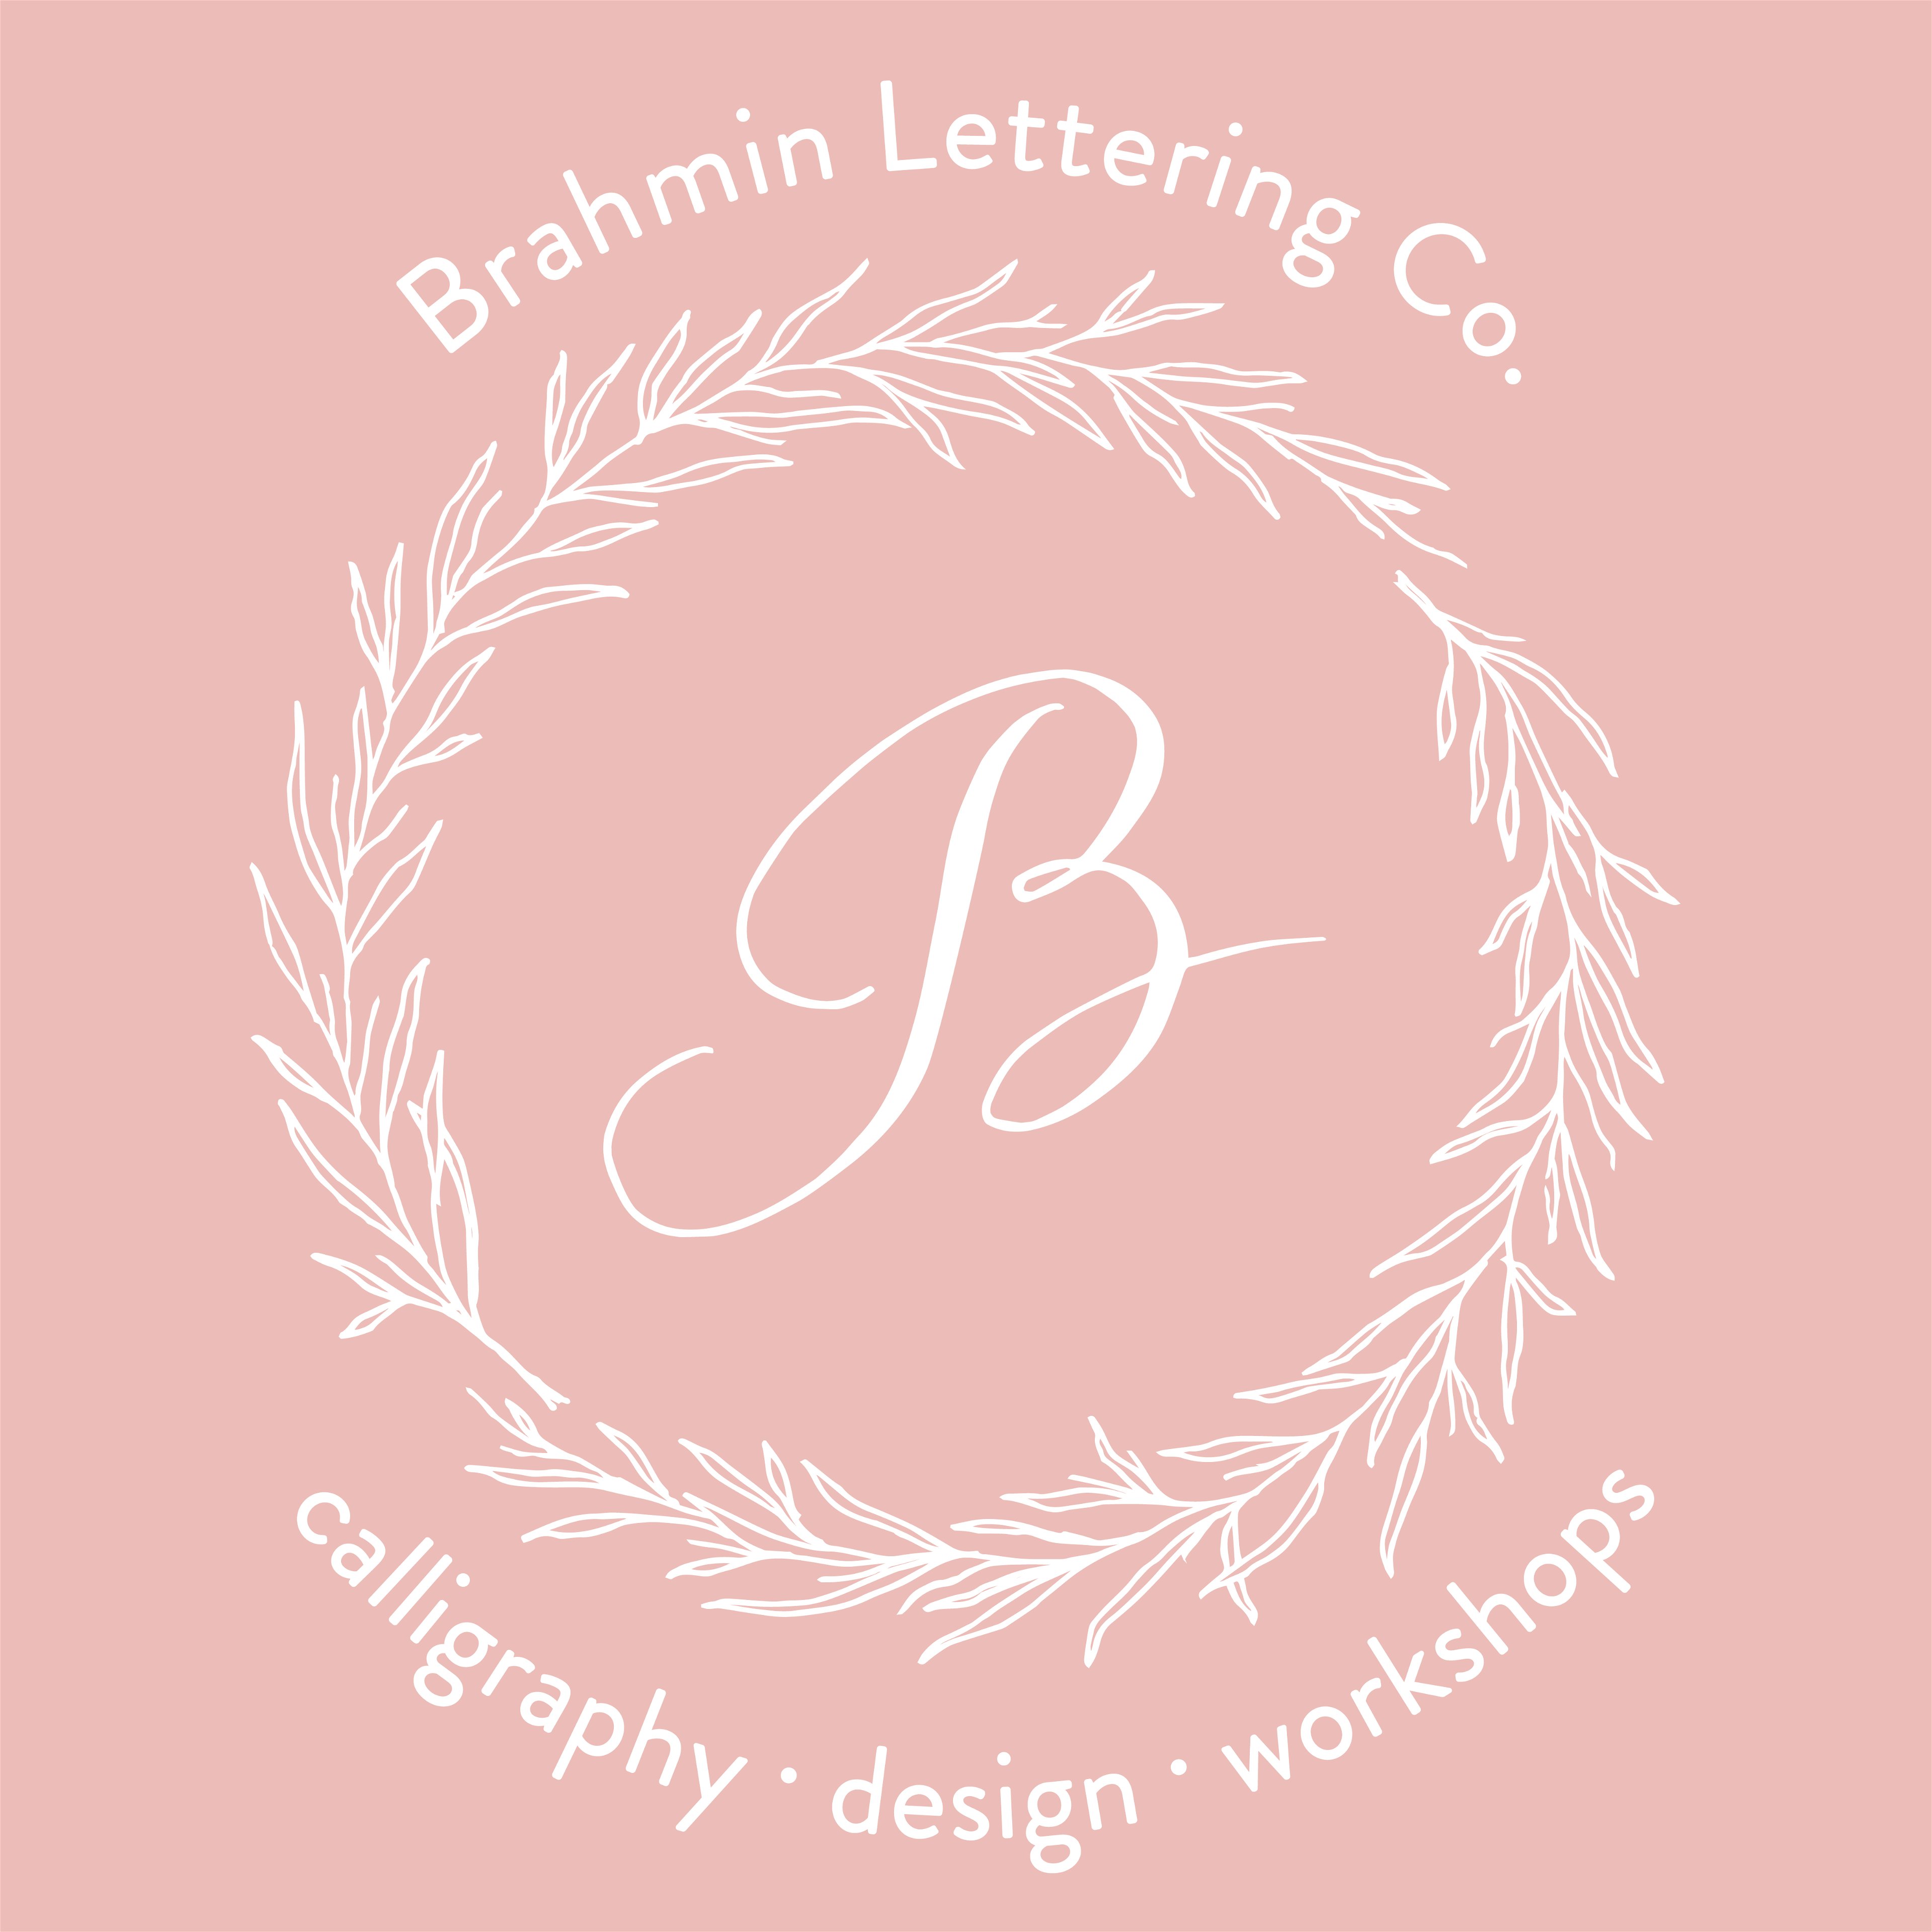 Brahmin Lettering Co. logo